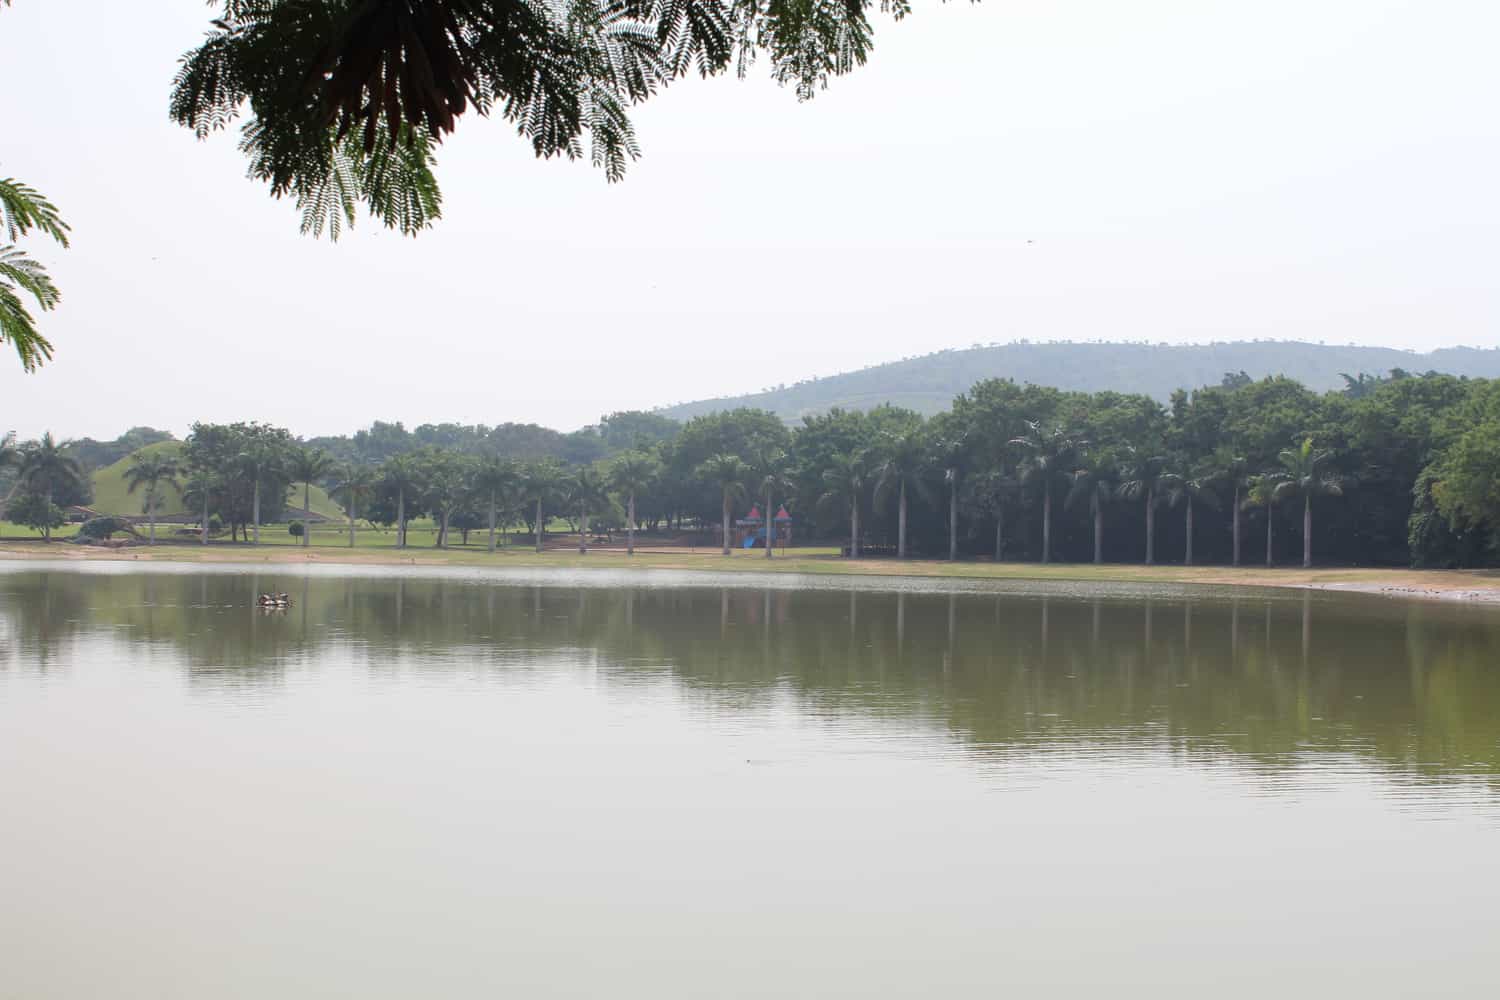 The lake at Vidyanagar, near Hampi, Karnataka